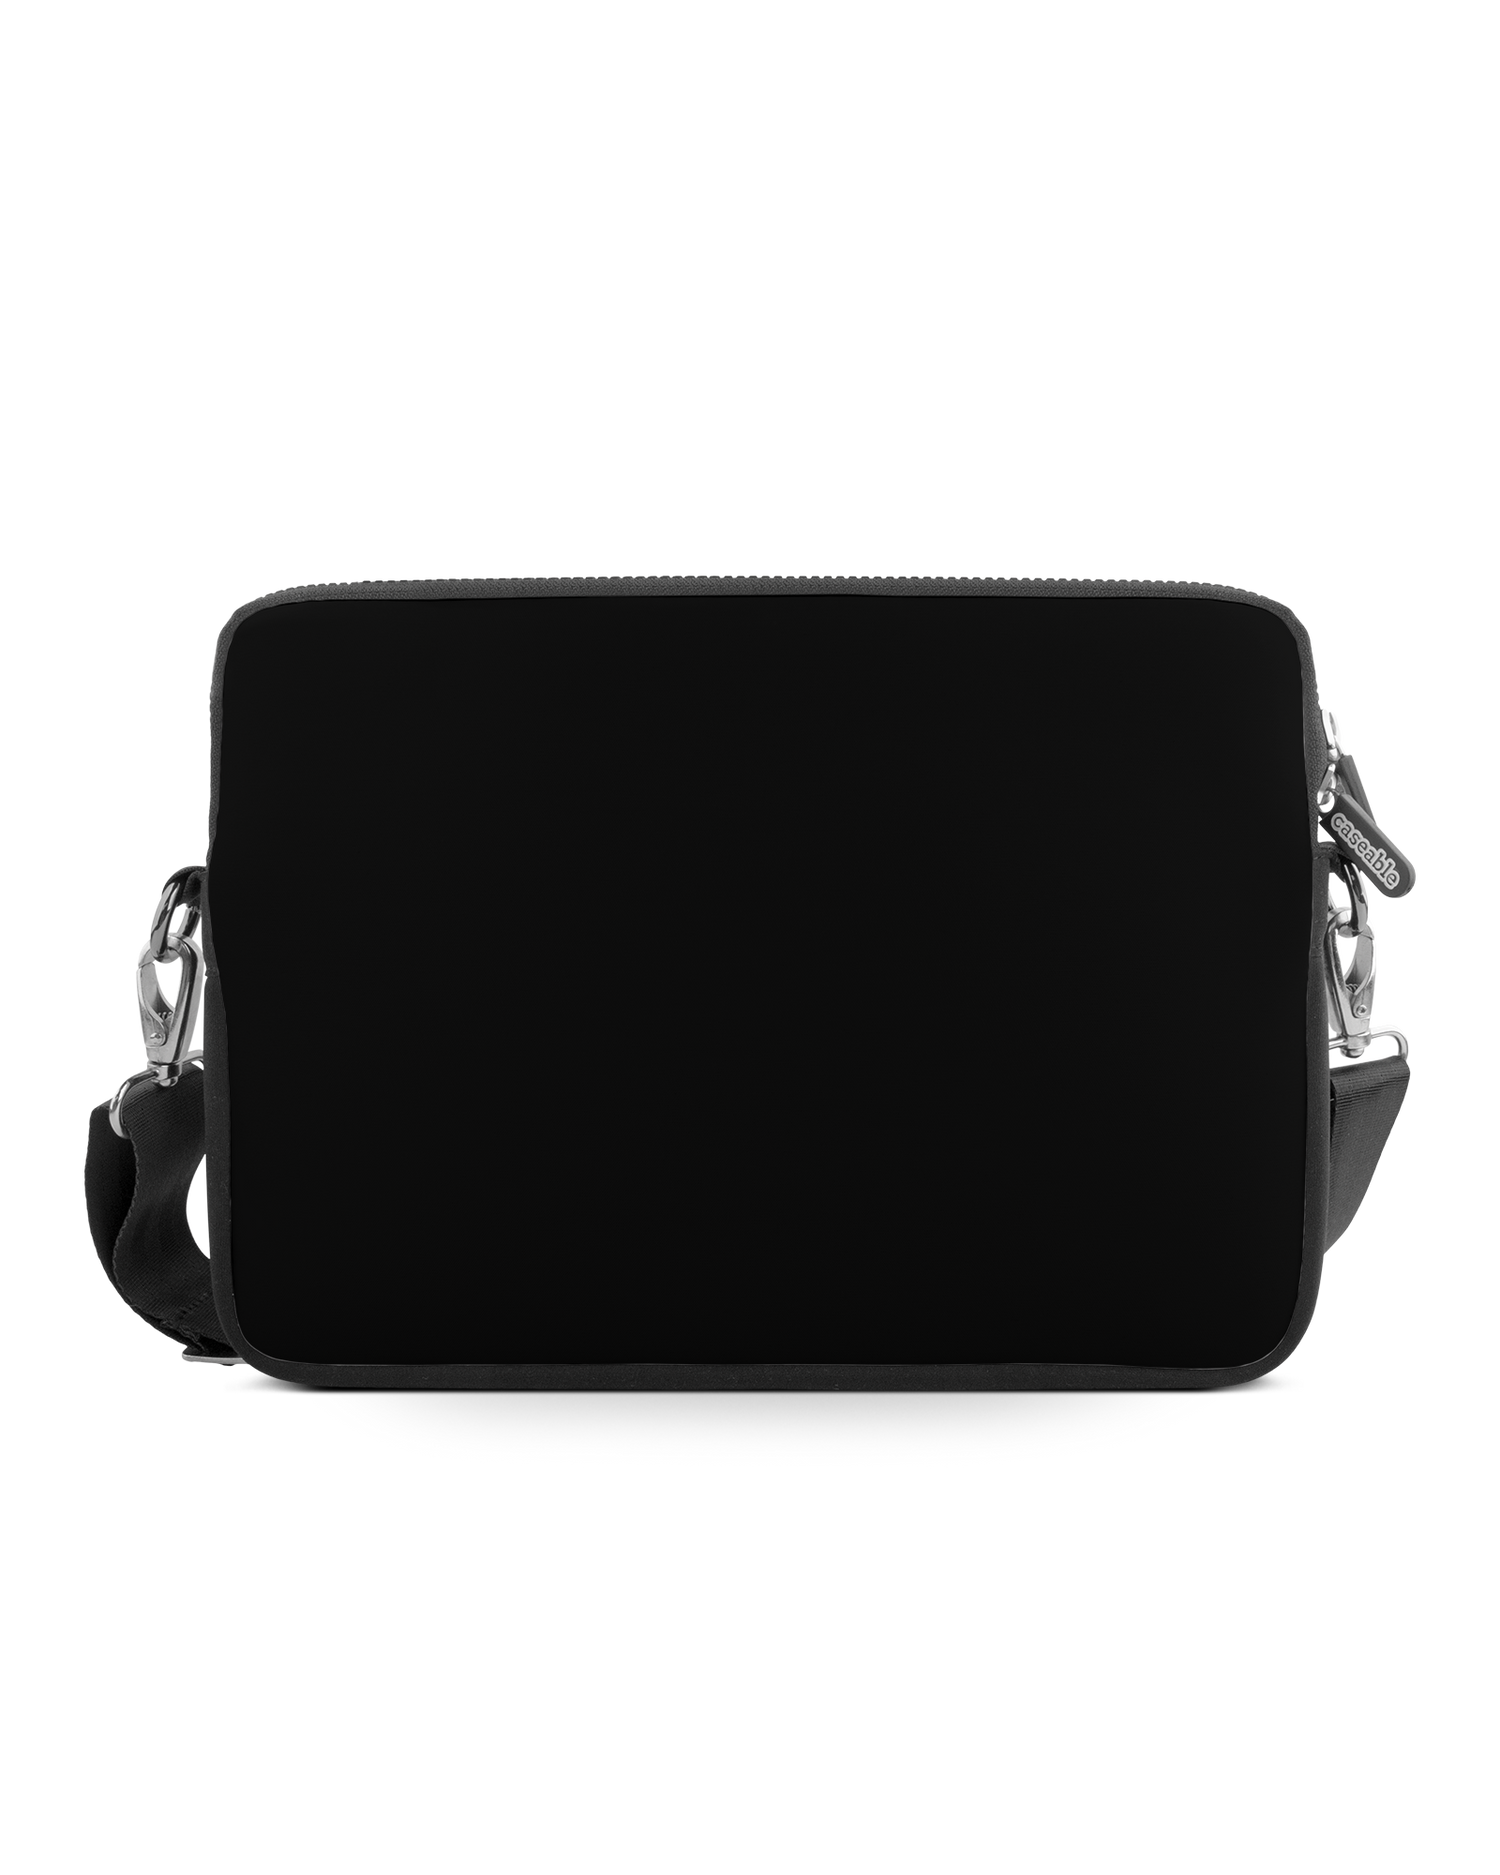 BLACK Premium Laptop Bag 13 inch: Front View